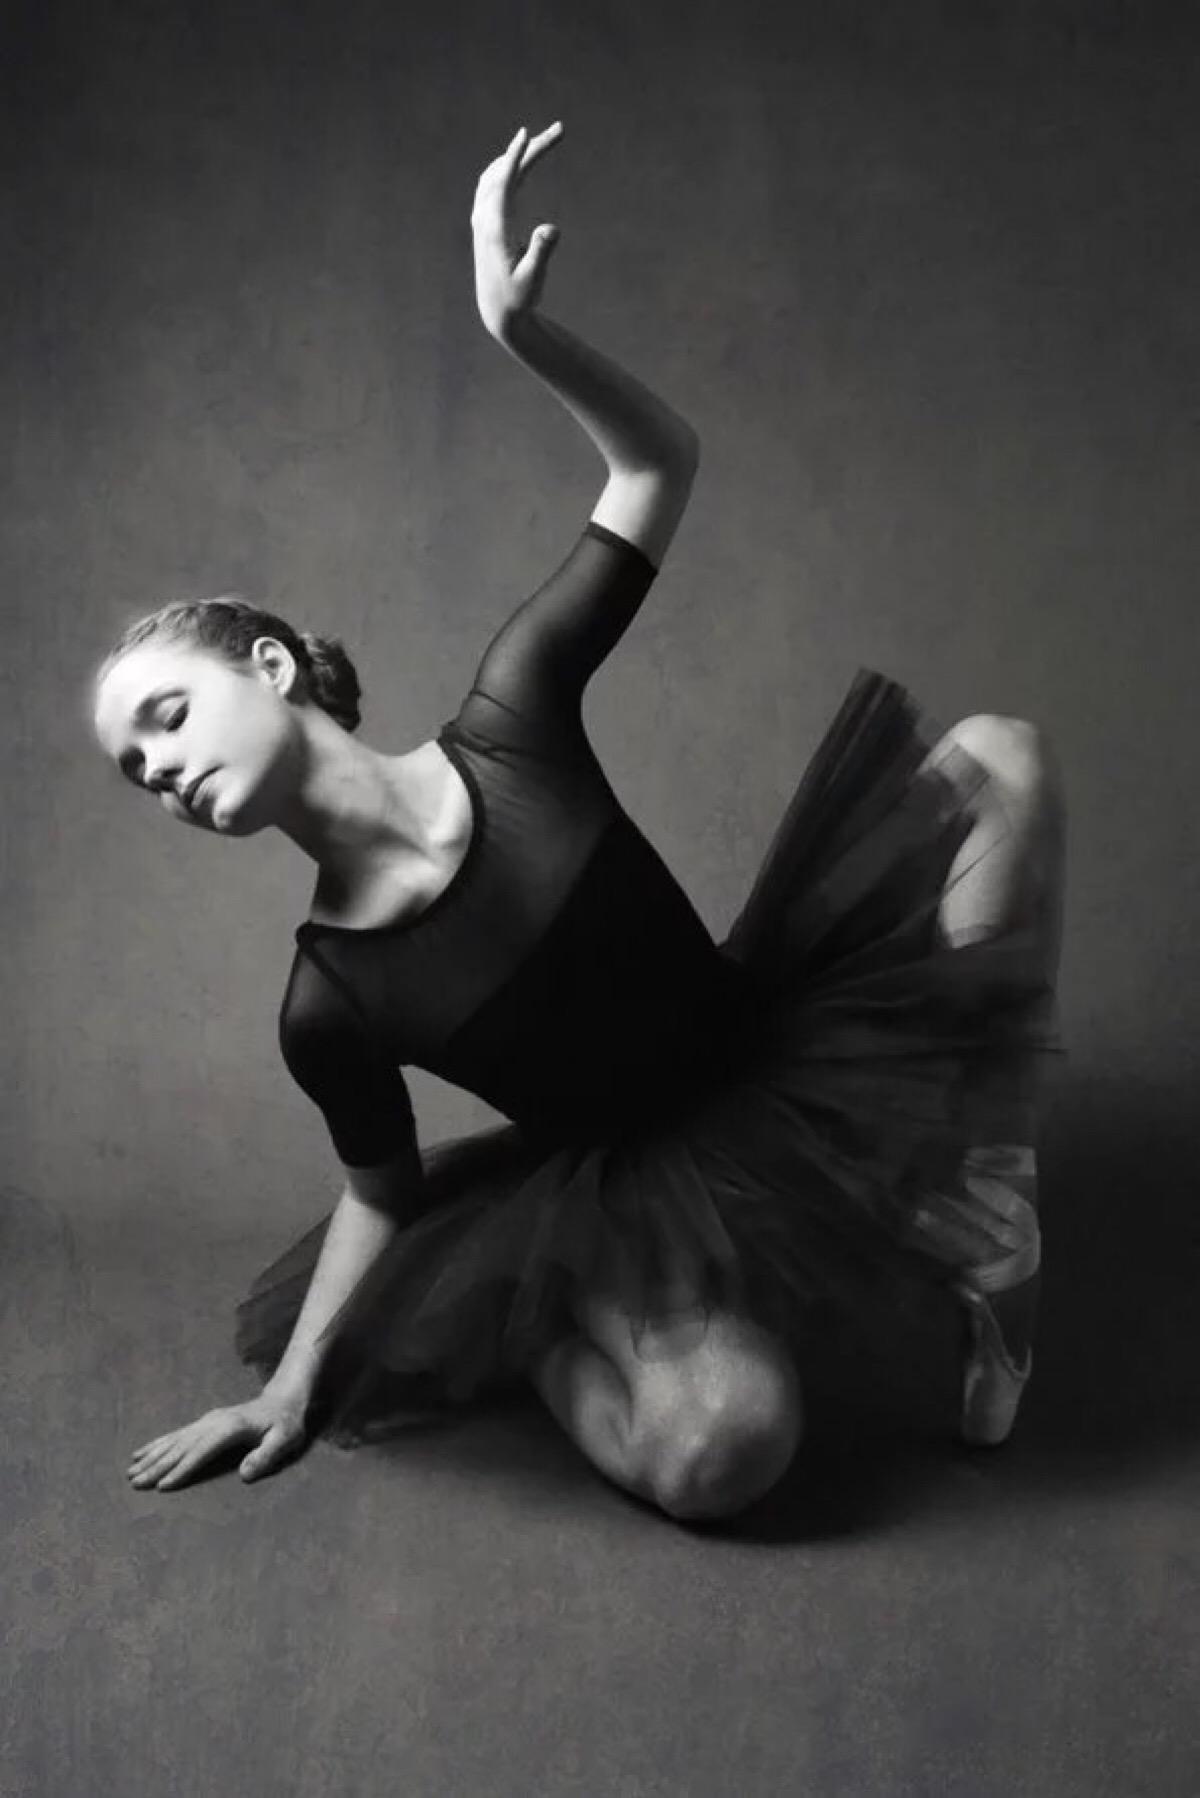 来自于美国摄影师,同时也是一位芭蕾舞蹈家josephine cardin的摄影